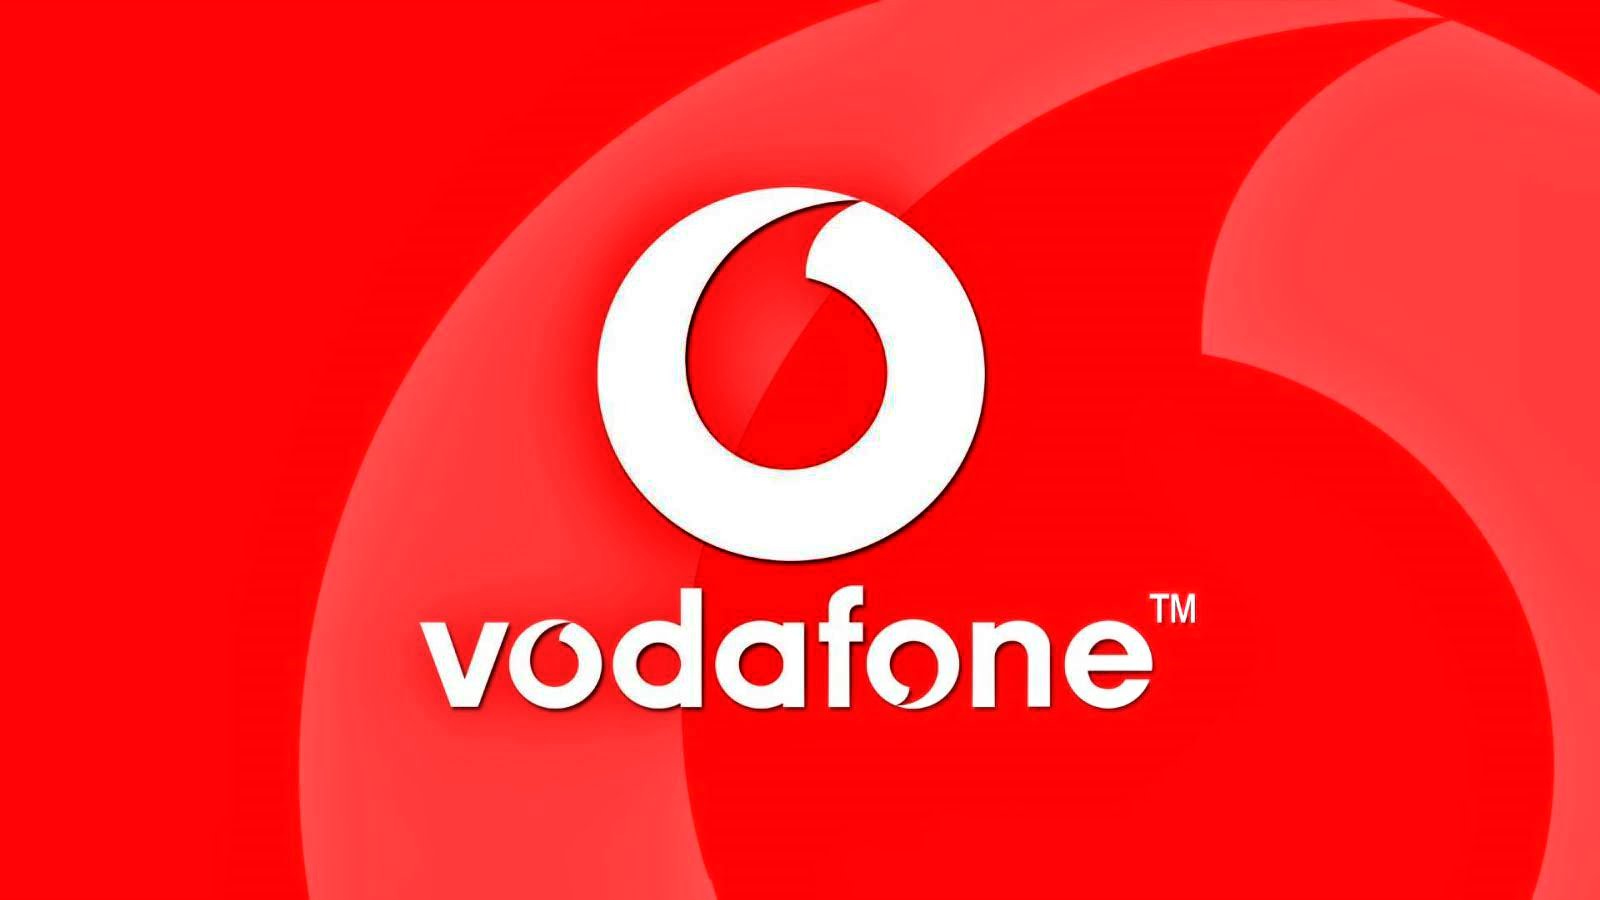 newit ro Vouchere Vodafone Oferite GRATUIT Clientilor Toata Romania